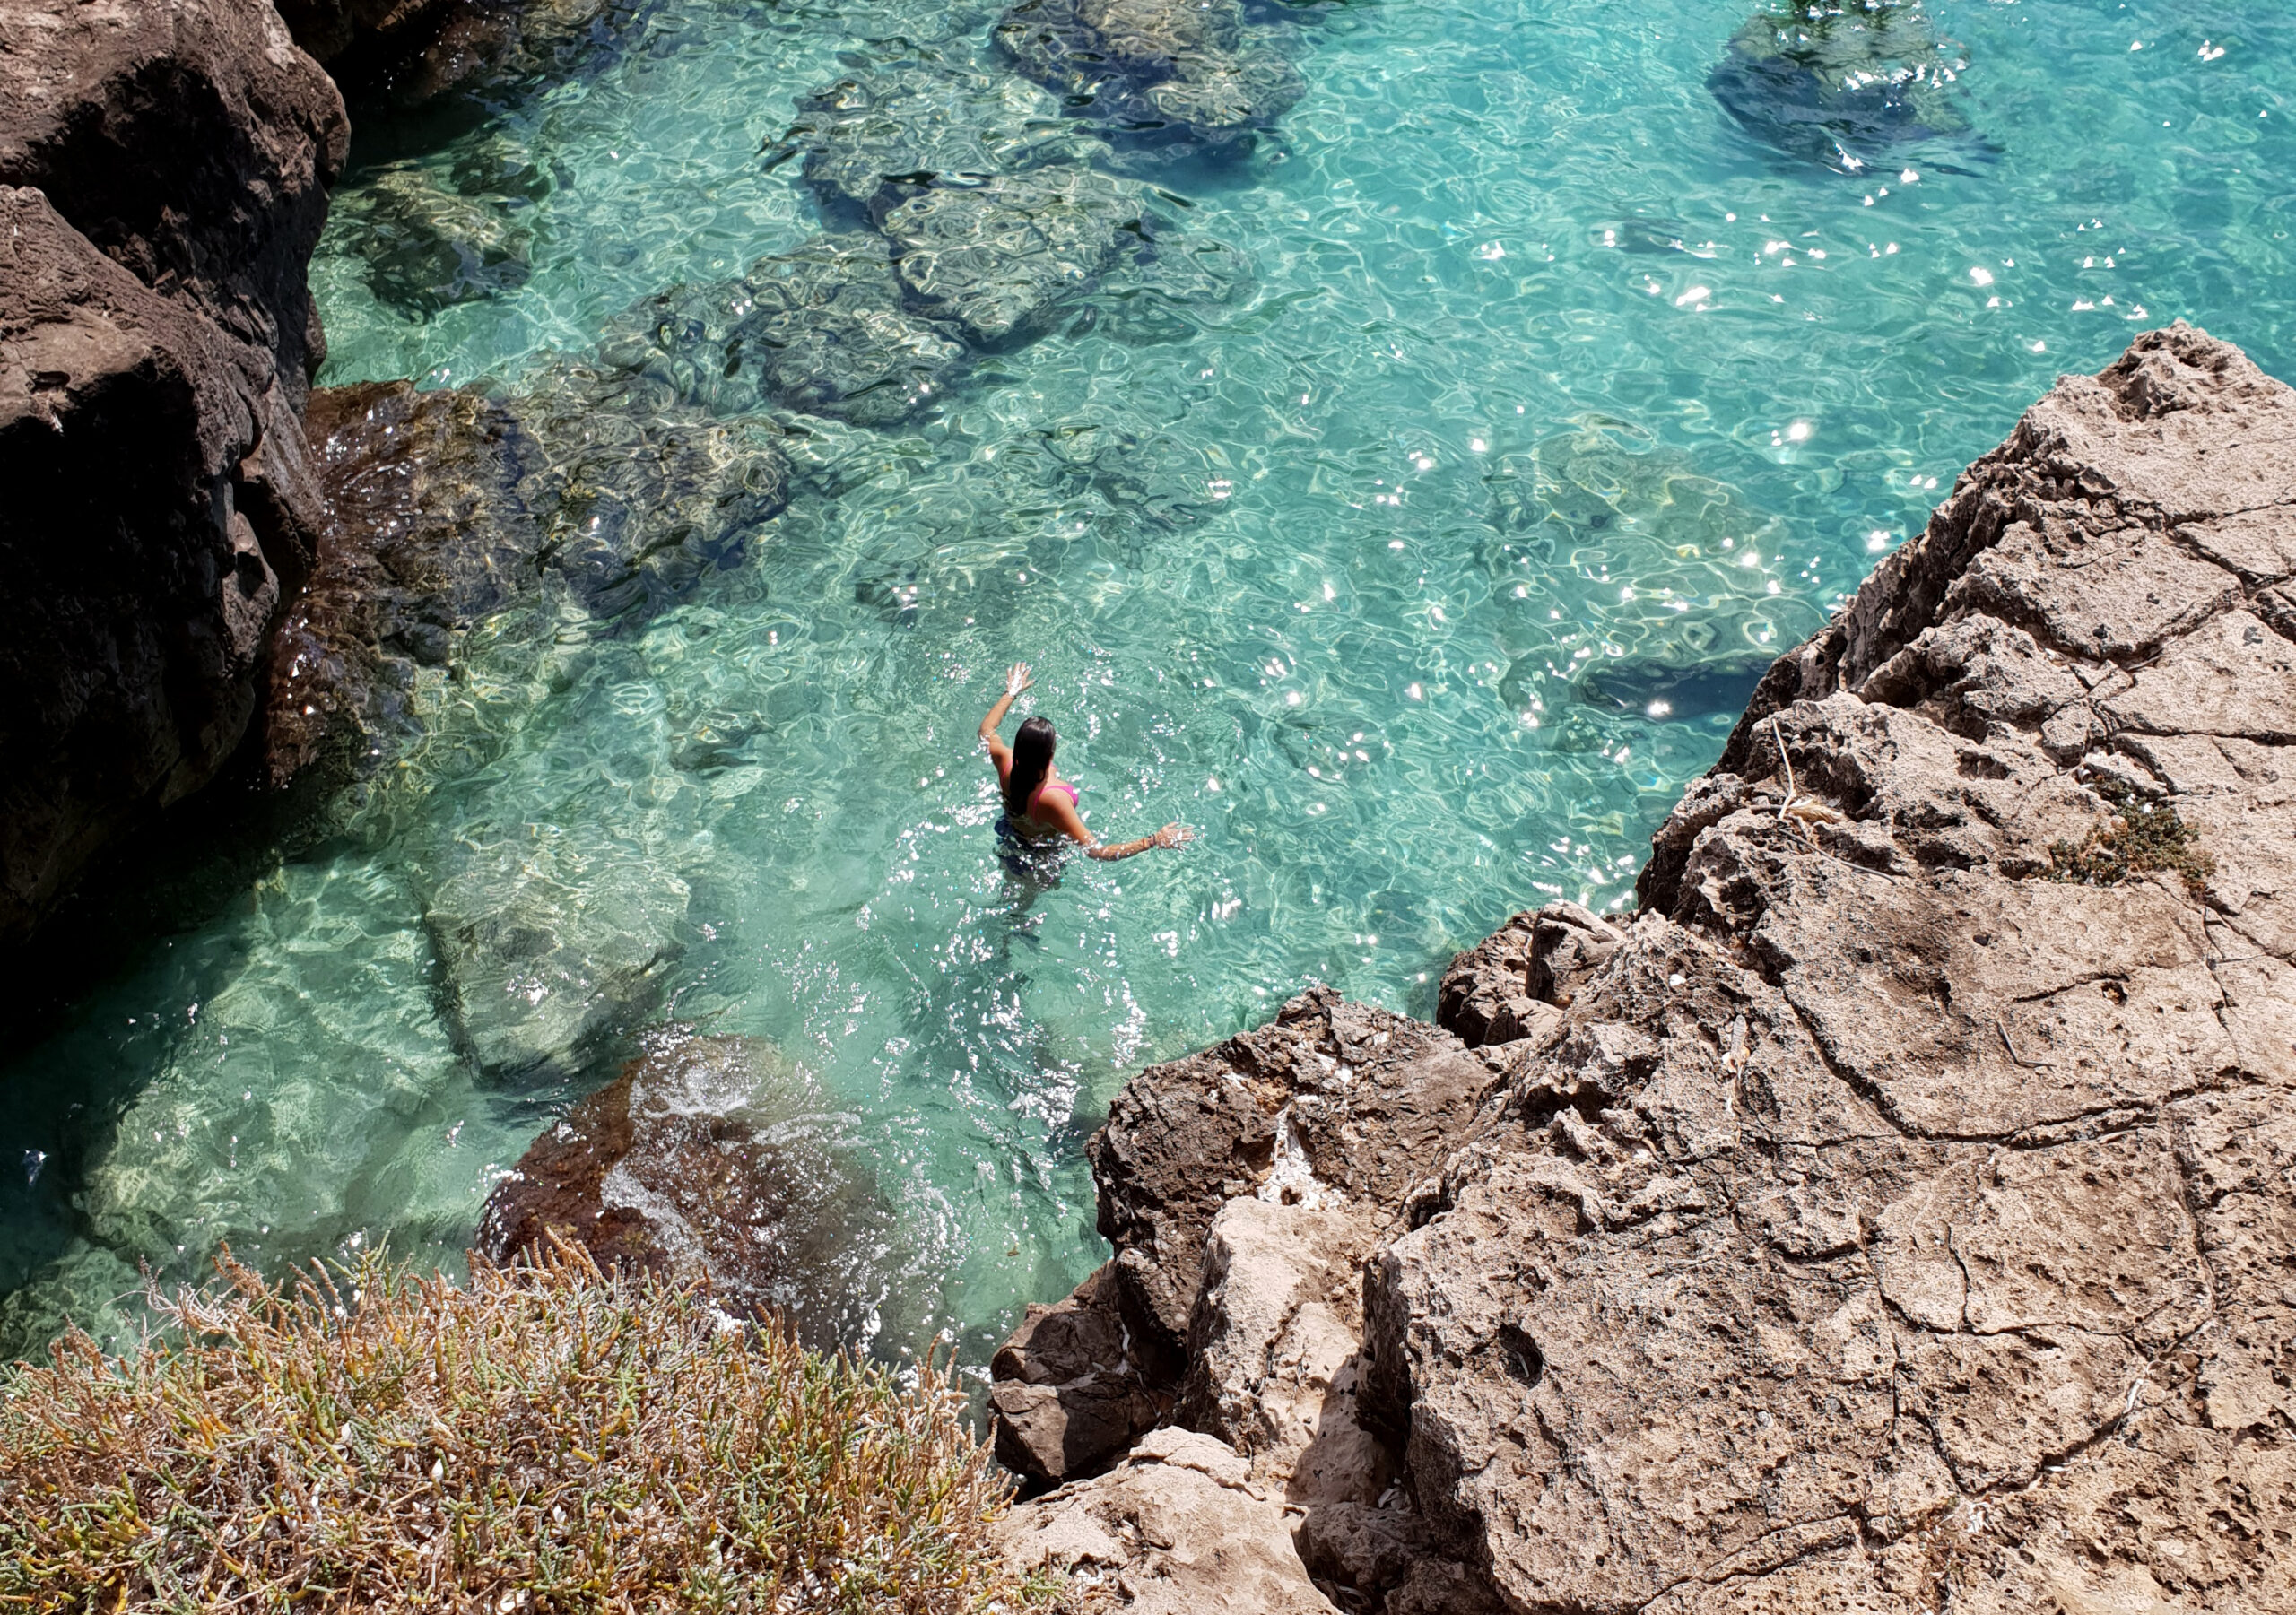 Carlotta immersa in un'acqua azzurra e limpidissima, in una insenatura rocciosa